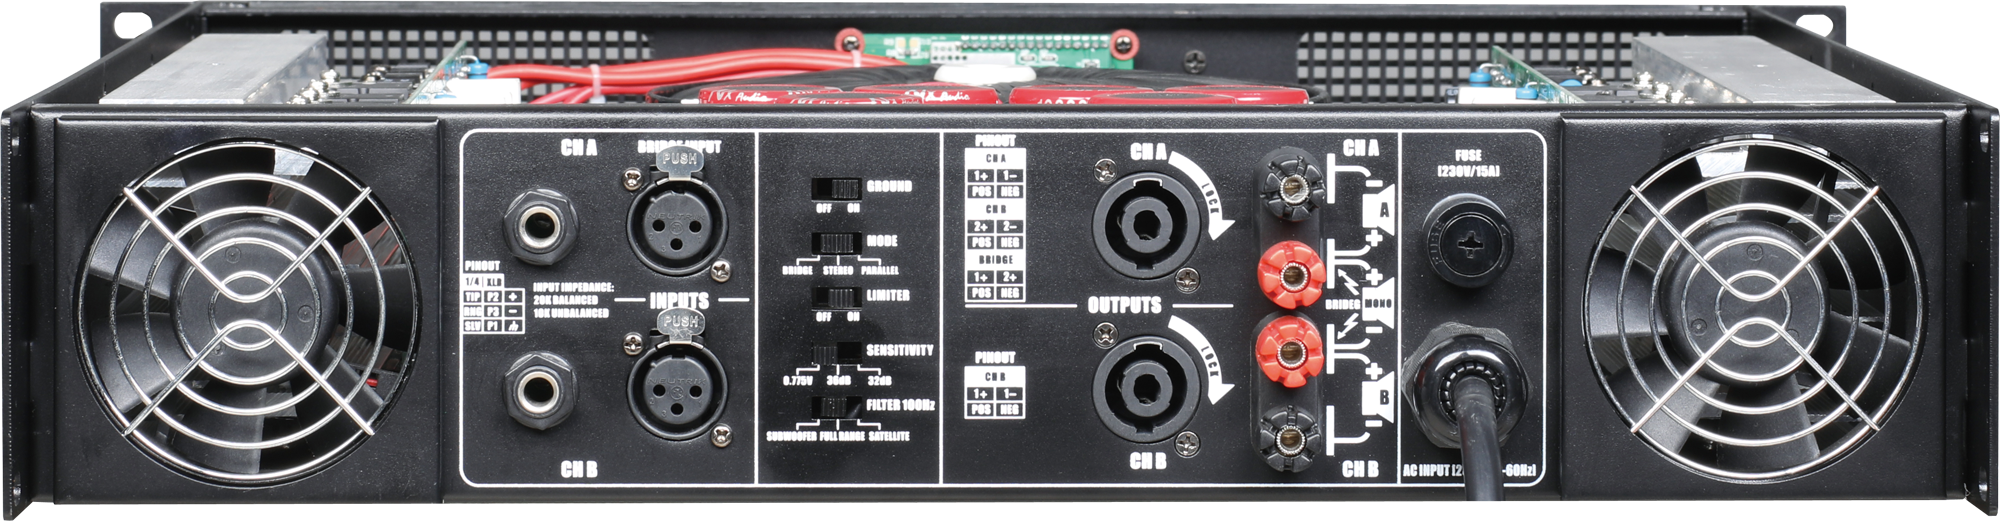 VA serie amplificador de potencia de clase I profesional